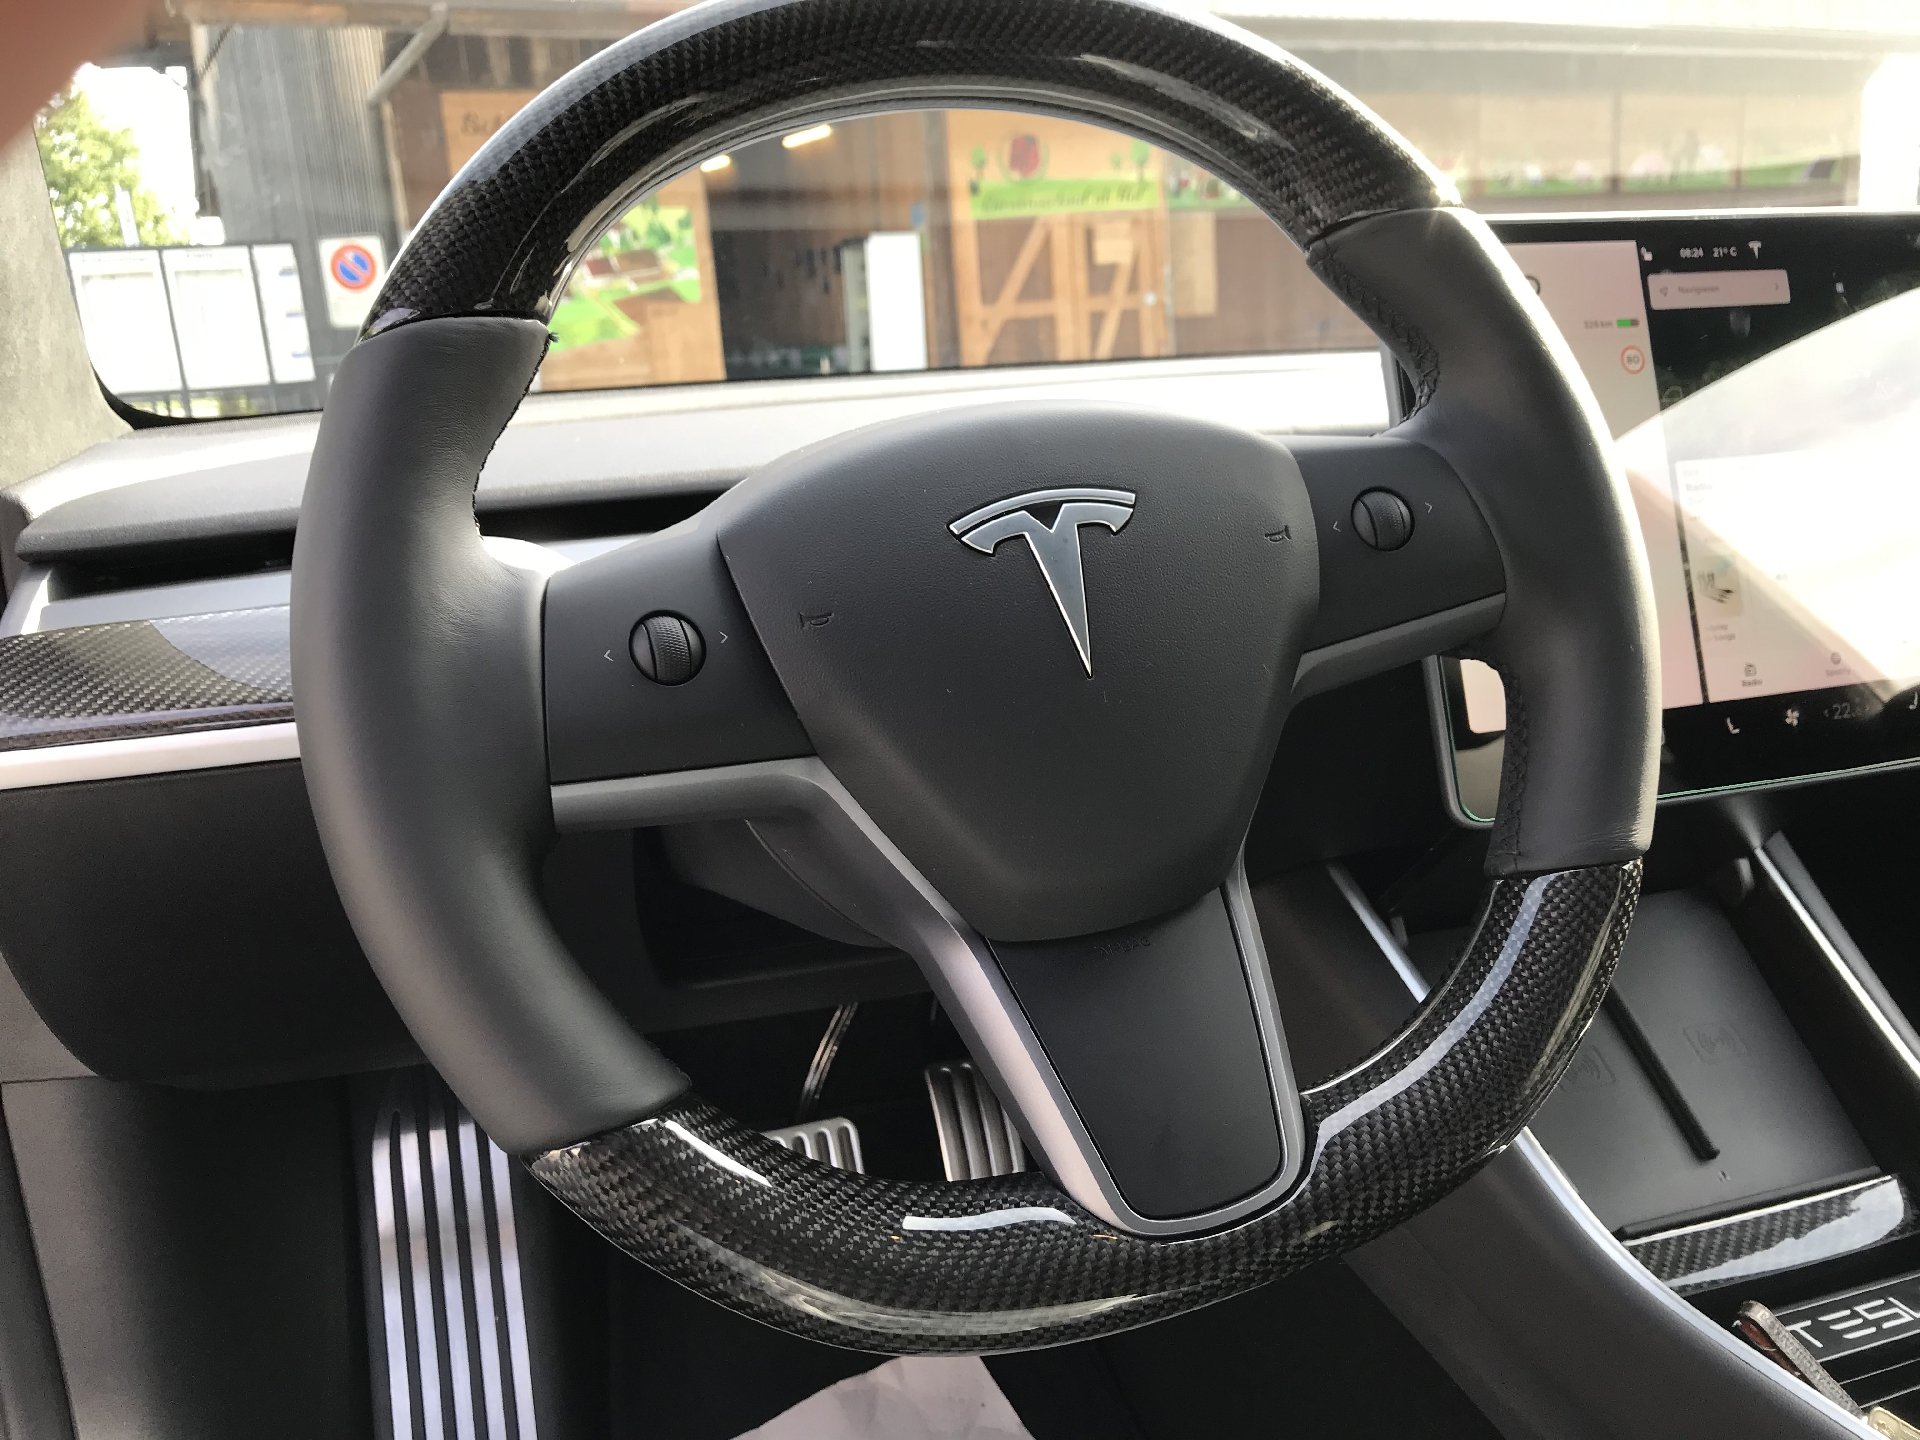 Foliatec Bremssattel Lack - Forcar Concepts - Tesla Tuning